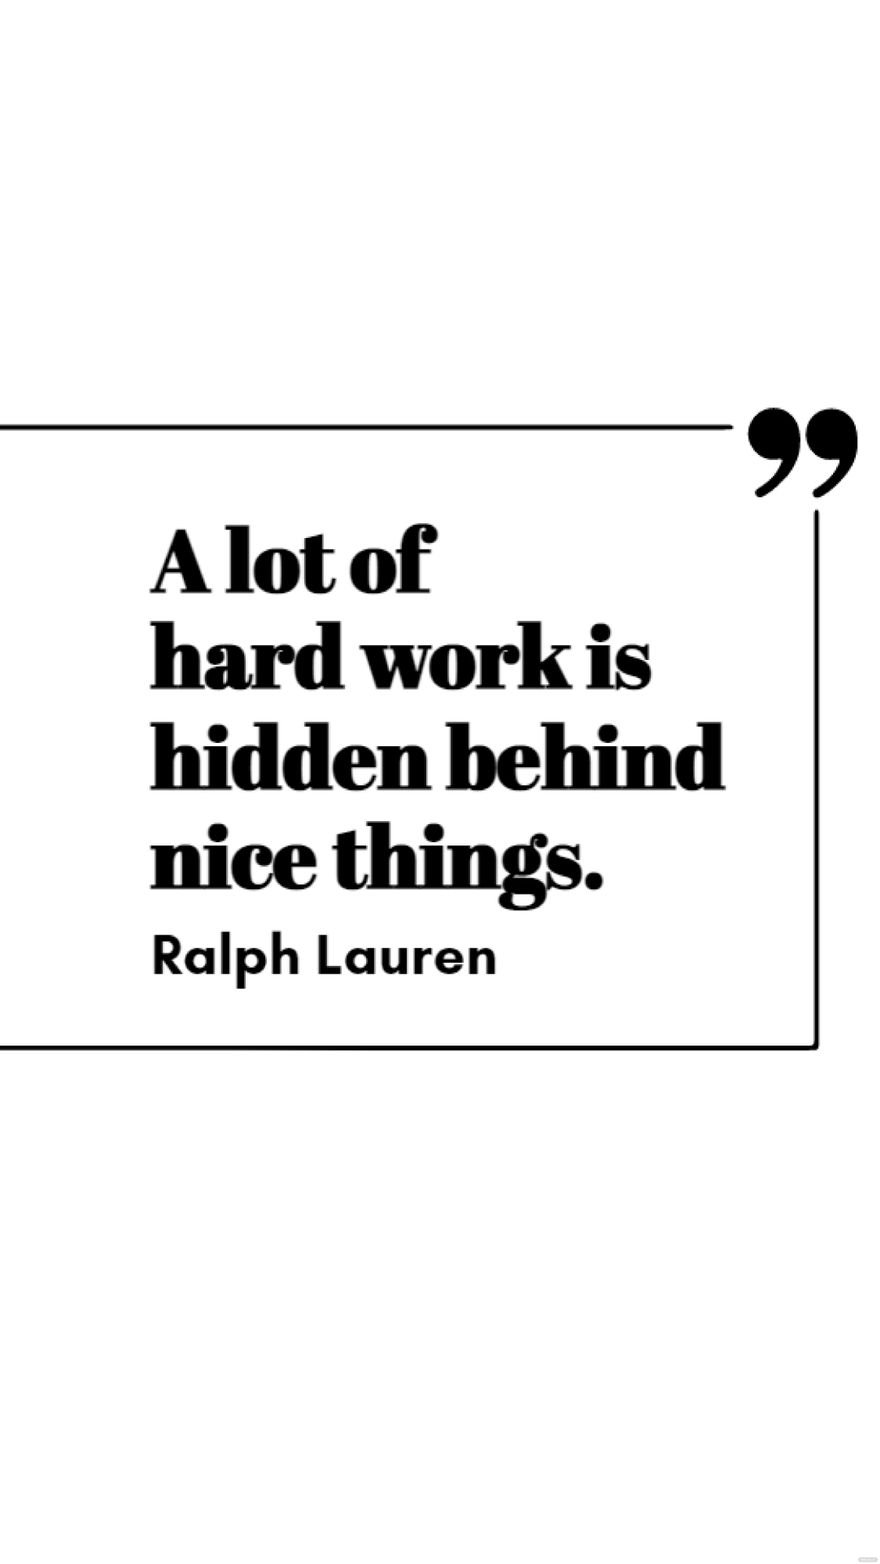 Ralph Lauren - A lot of hard work is hidden behind nice things. in JPG